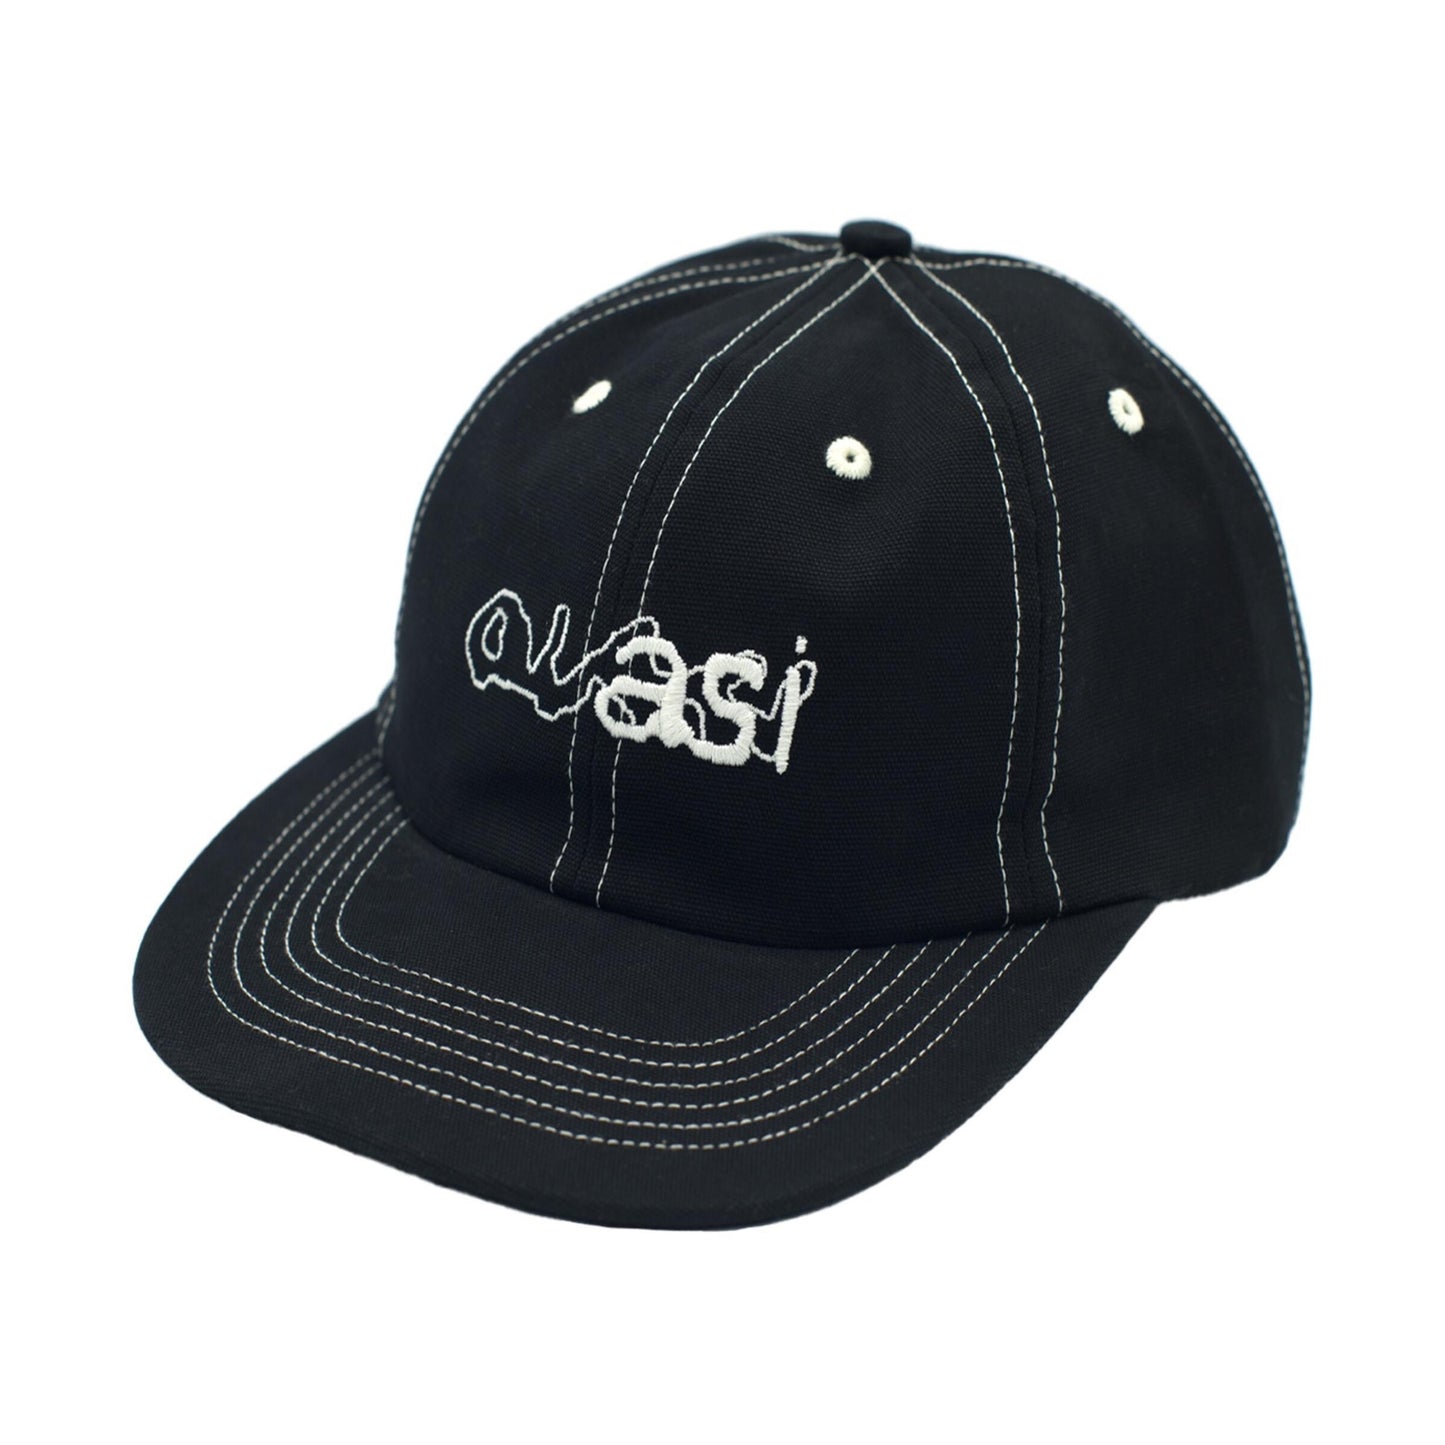 Quasi Lowercase Hat Black